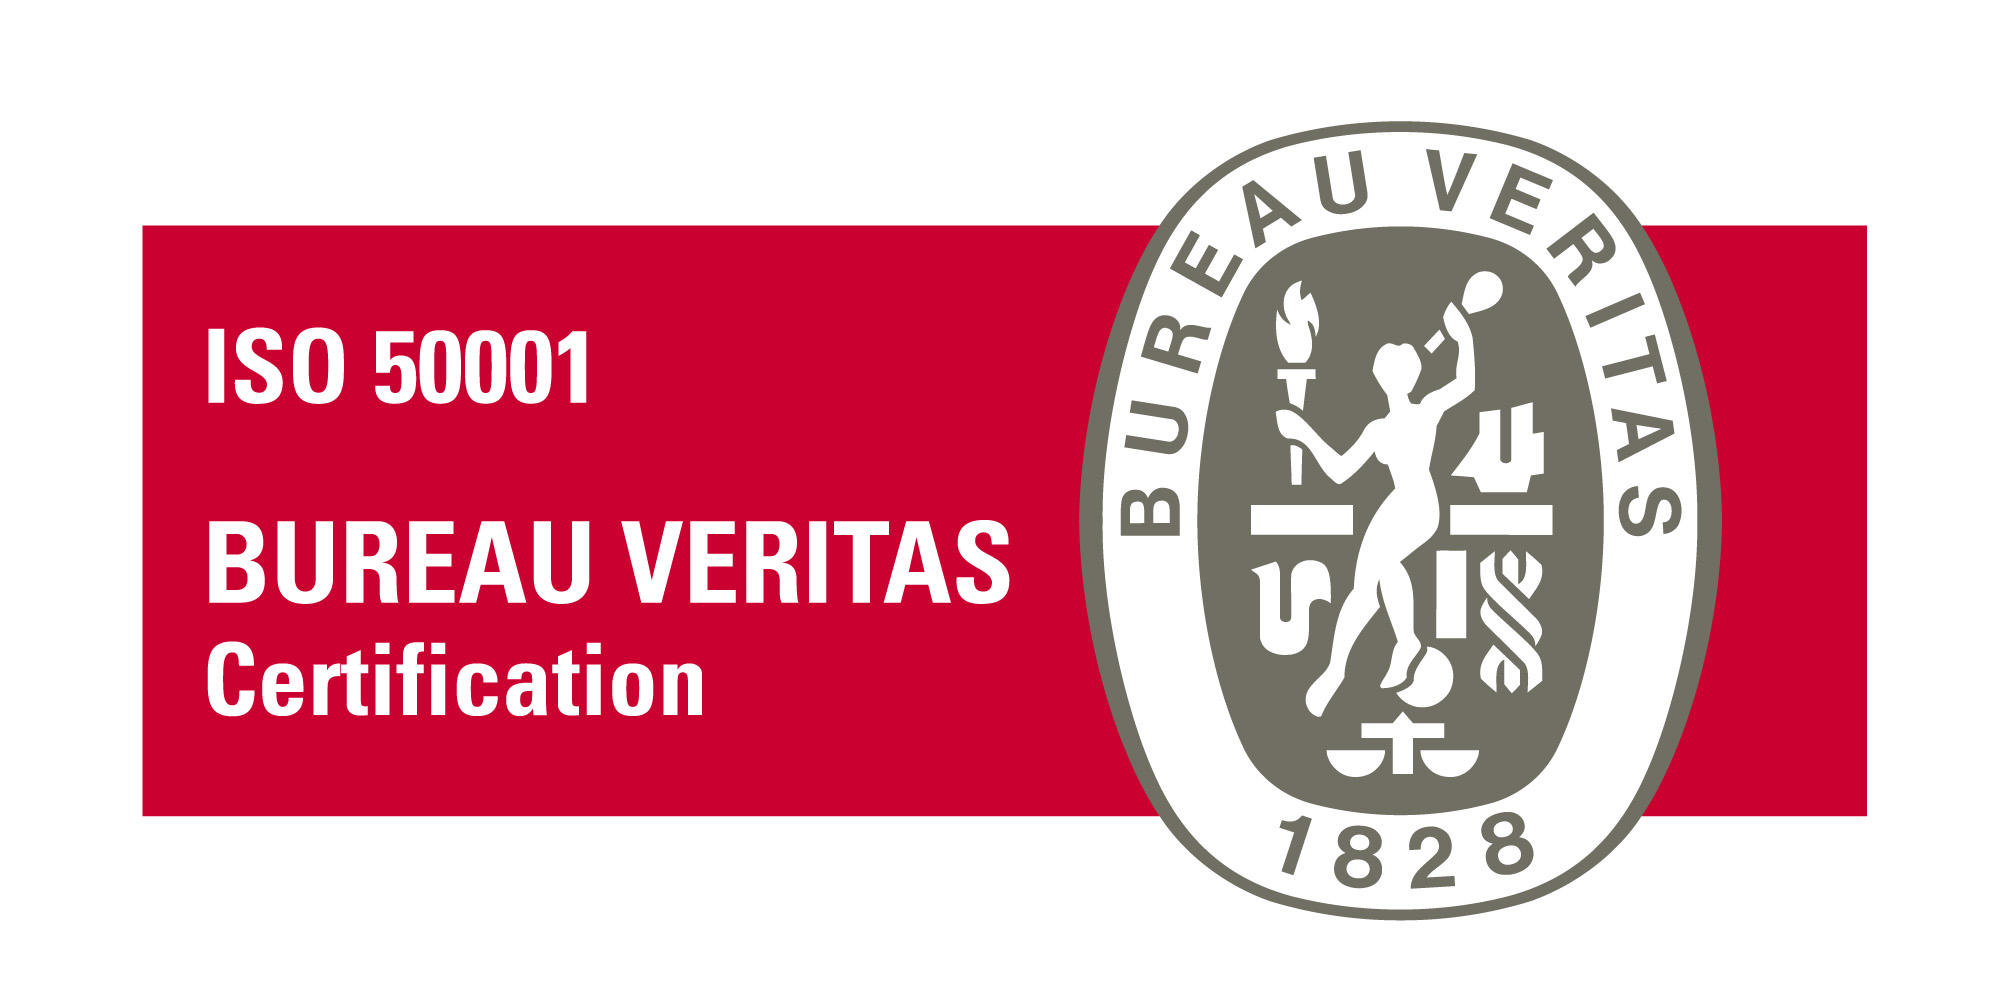 BV Certification ISO50001